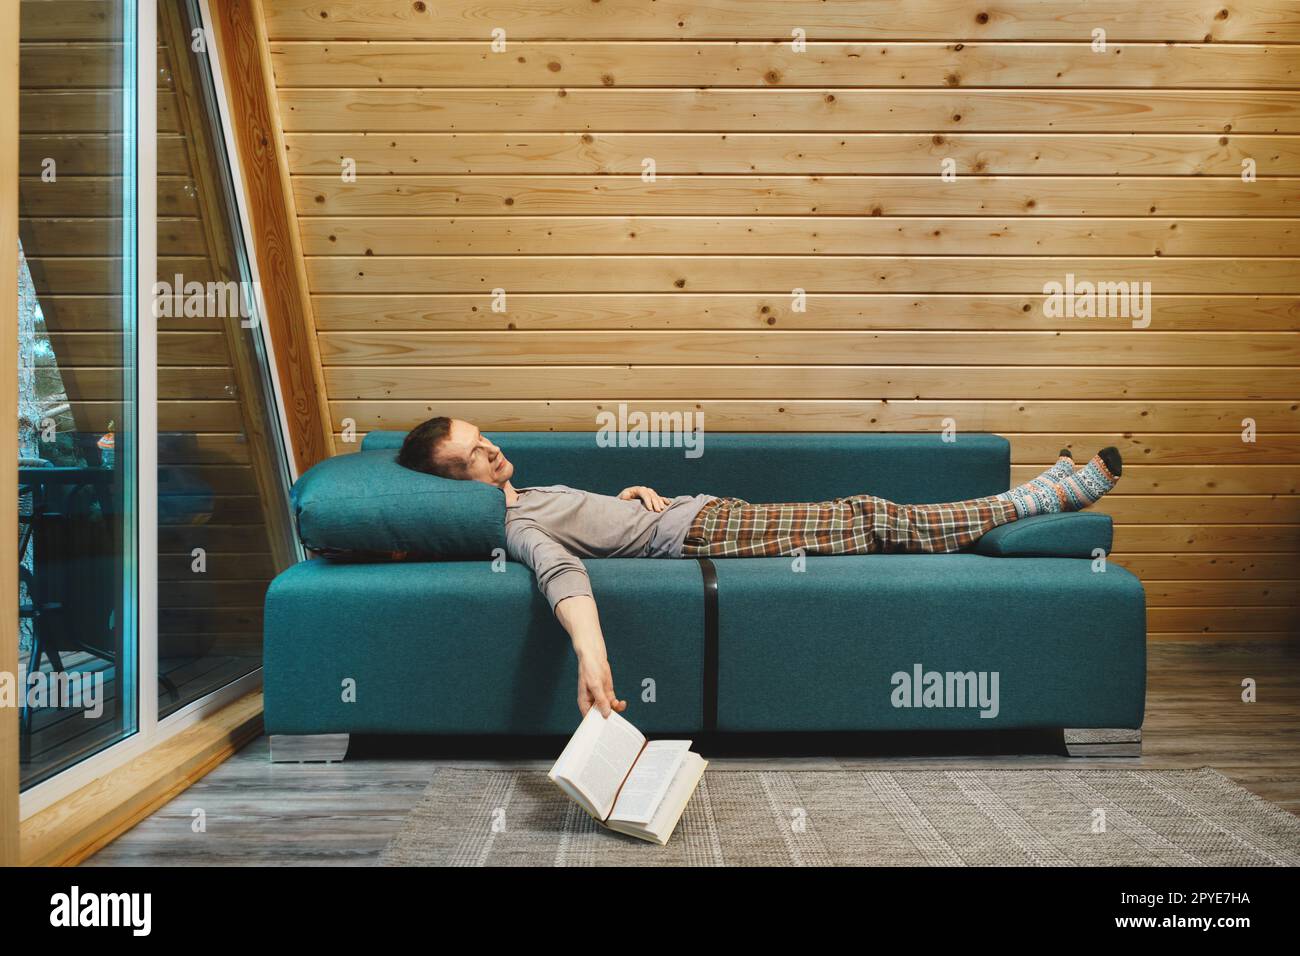 L'homme lisait un livre dans sa cabine en bois le jour des pluies et s'endormit Banque D'Images